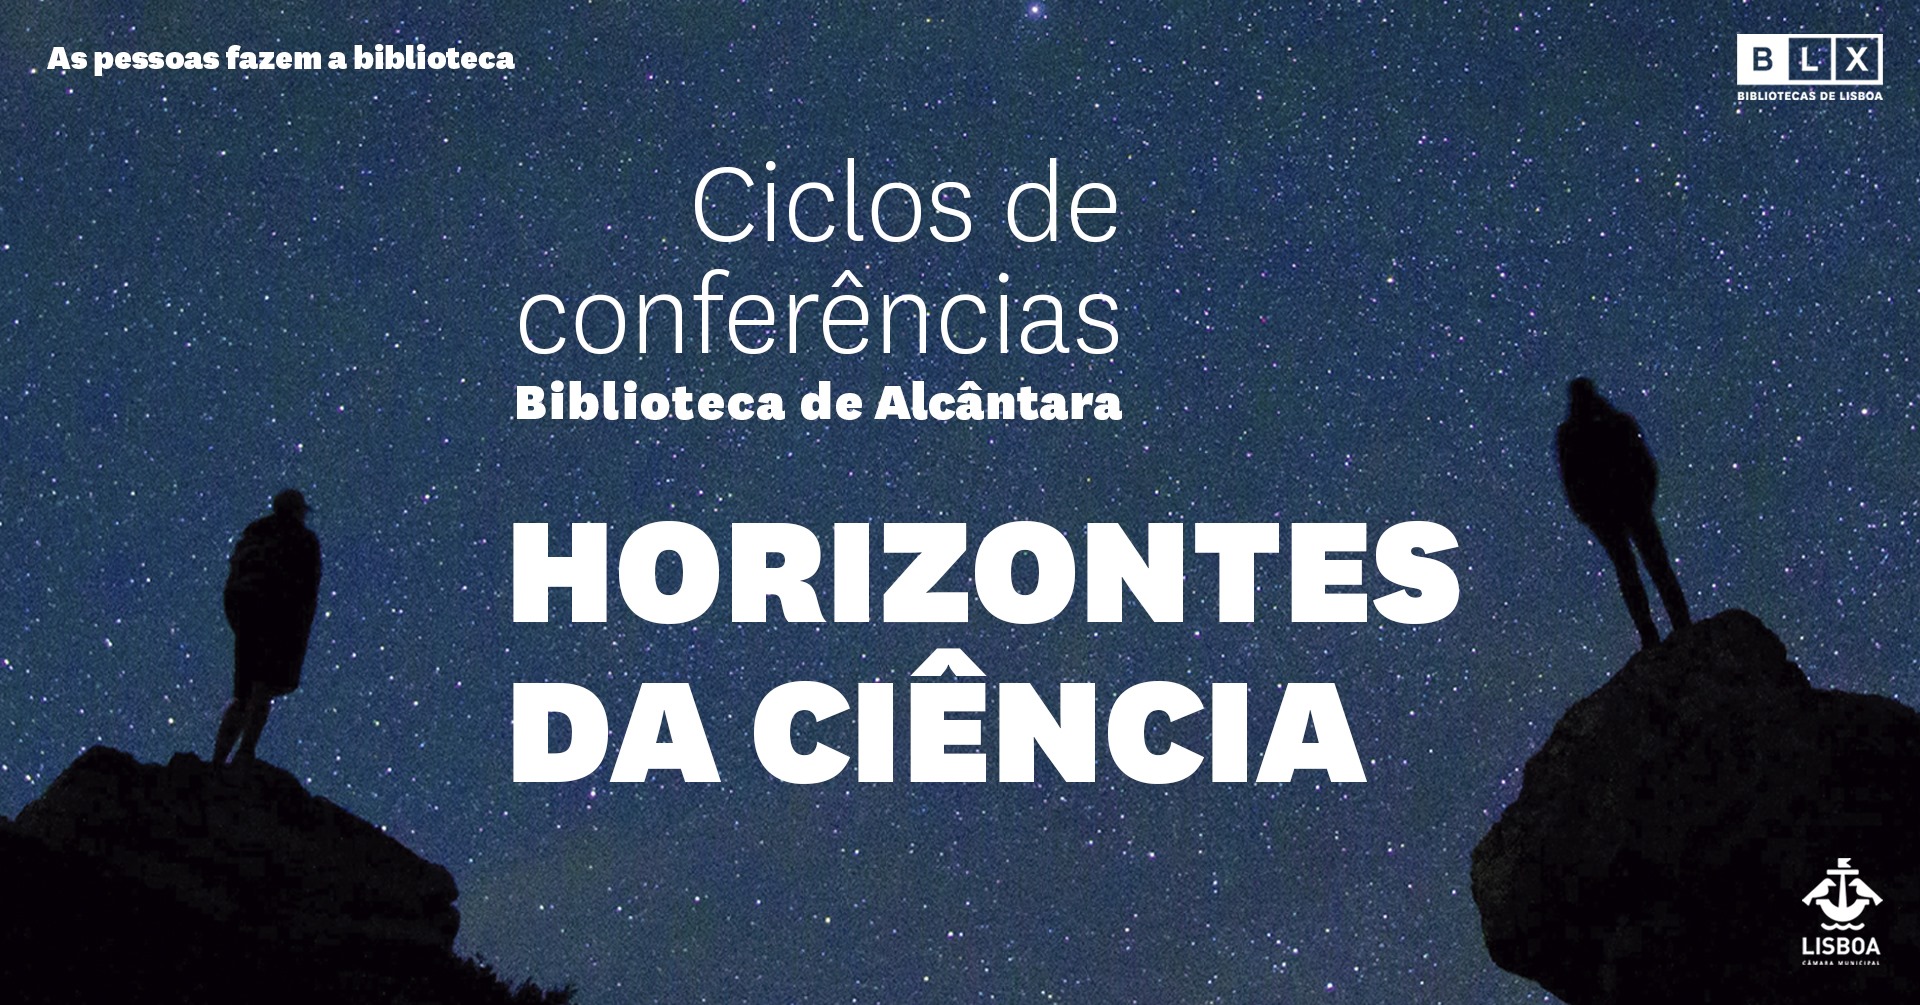 Ciclos de Conferências Horizontes da Ciência